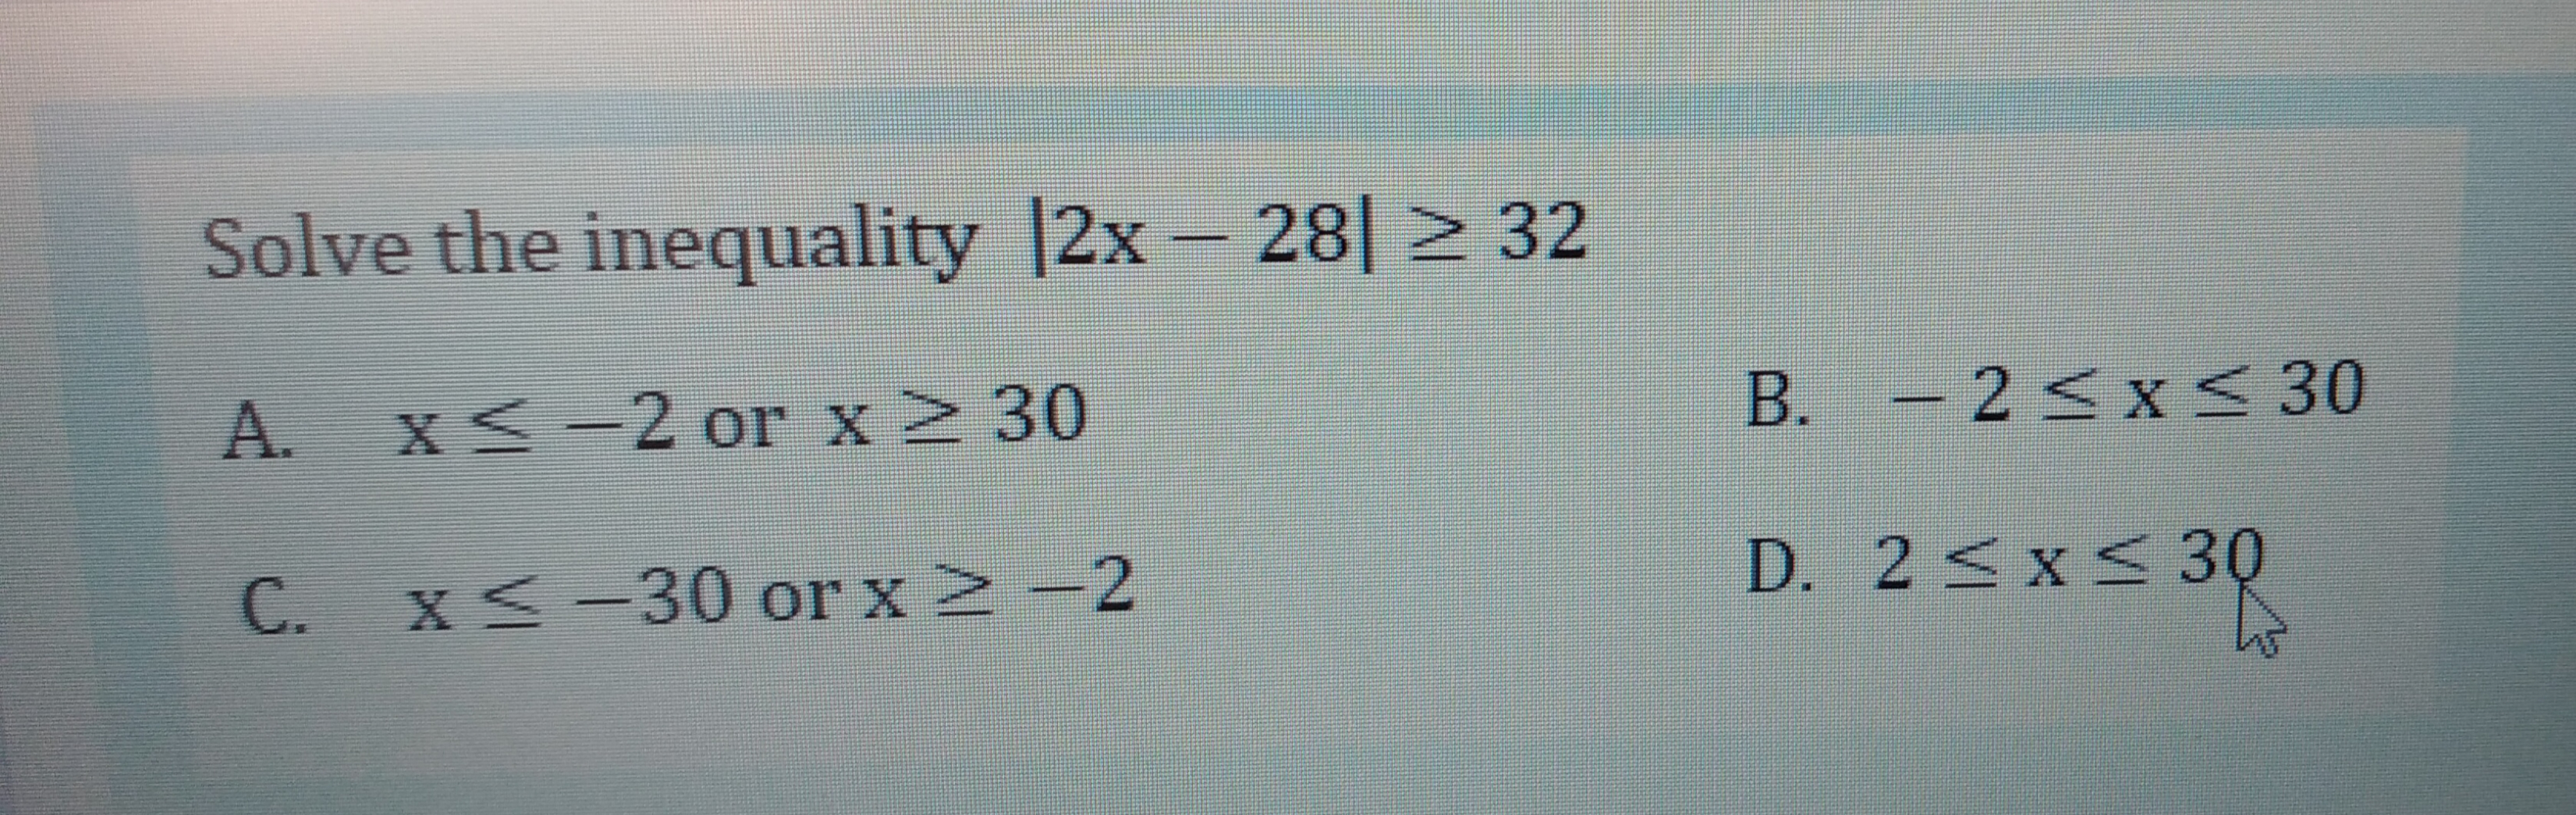 Solve the inequality |2x- 28| > 32
A.
XS-2 or x2 30
B. – 2< x < 30
D. 2 <x< 30
C. x< -30 or x2 -2
